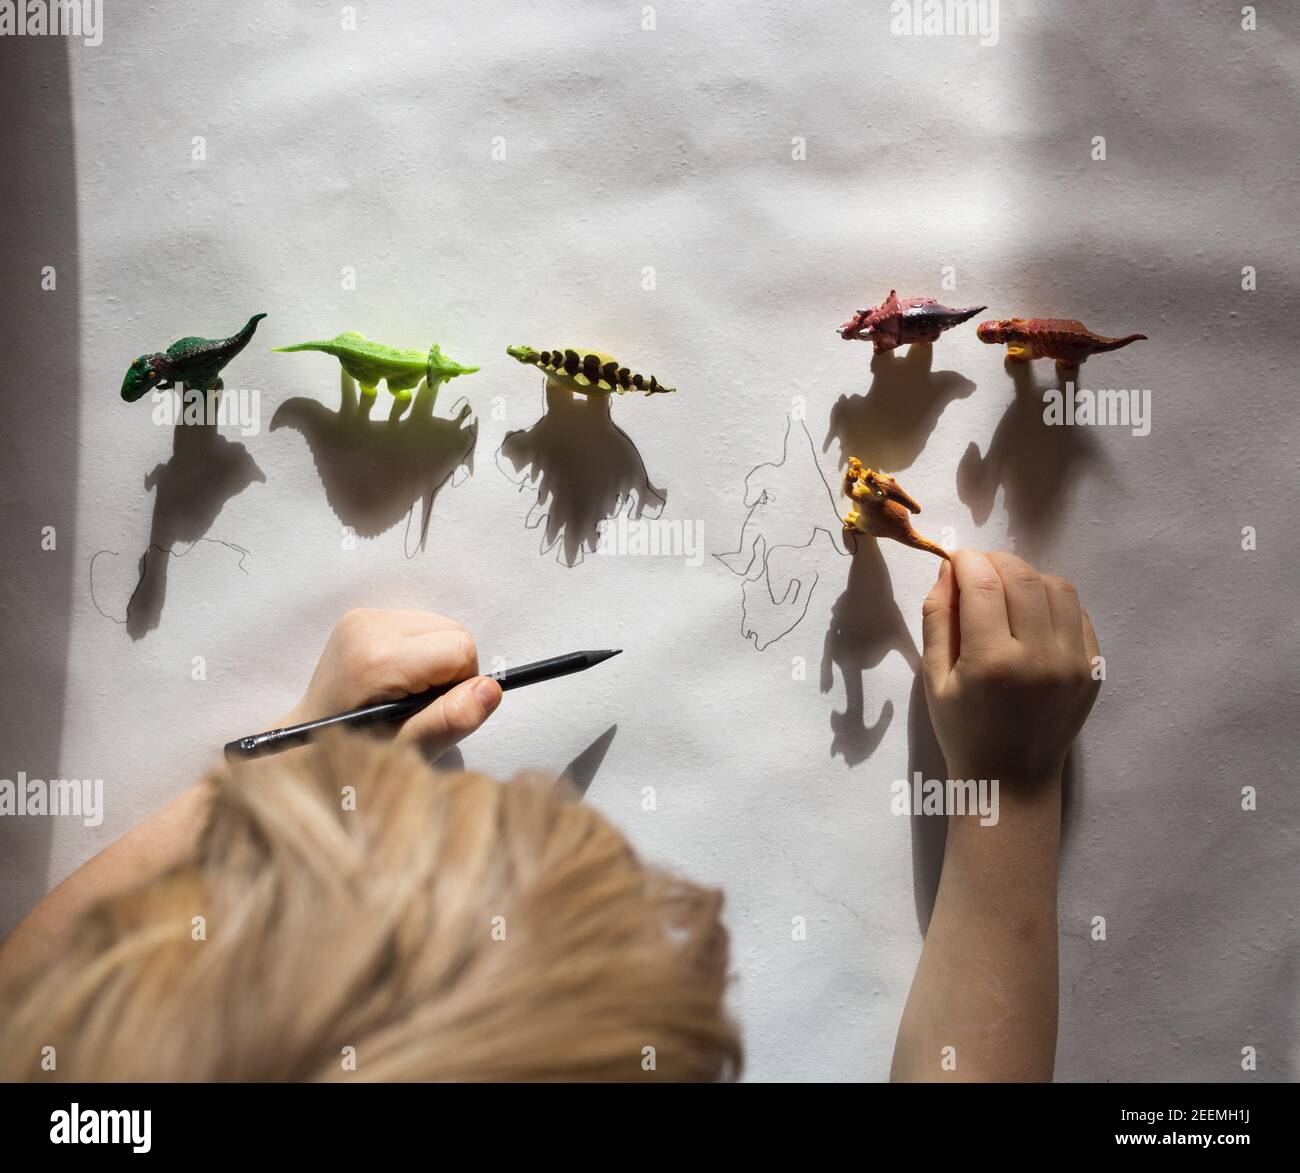 il bambino disegna con la matita ombre contrastanti dai piccoli dinosauri  giocattolo in piedi in fila. disegno di bambino, idee creative per la  creatività dei bambini Foto stock - Alamy